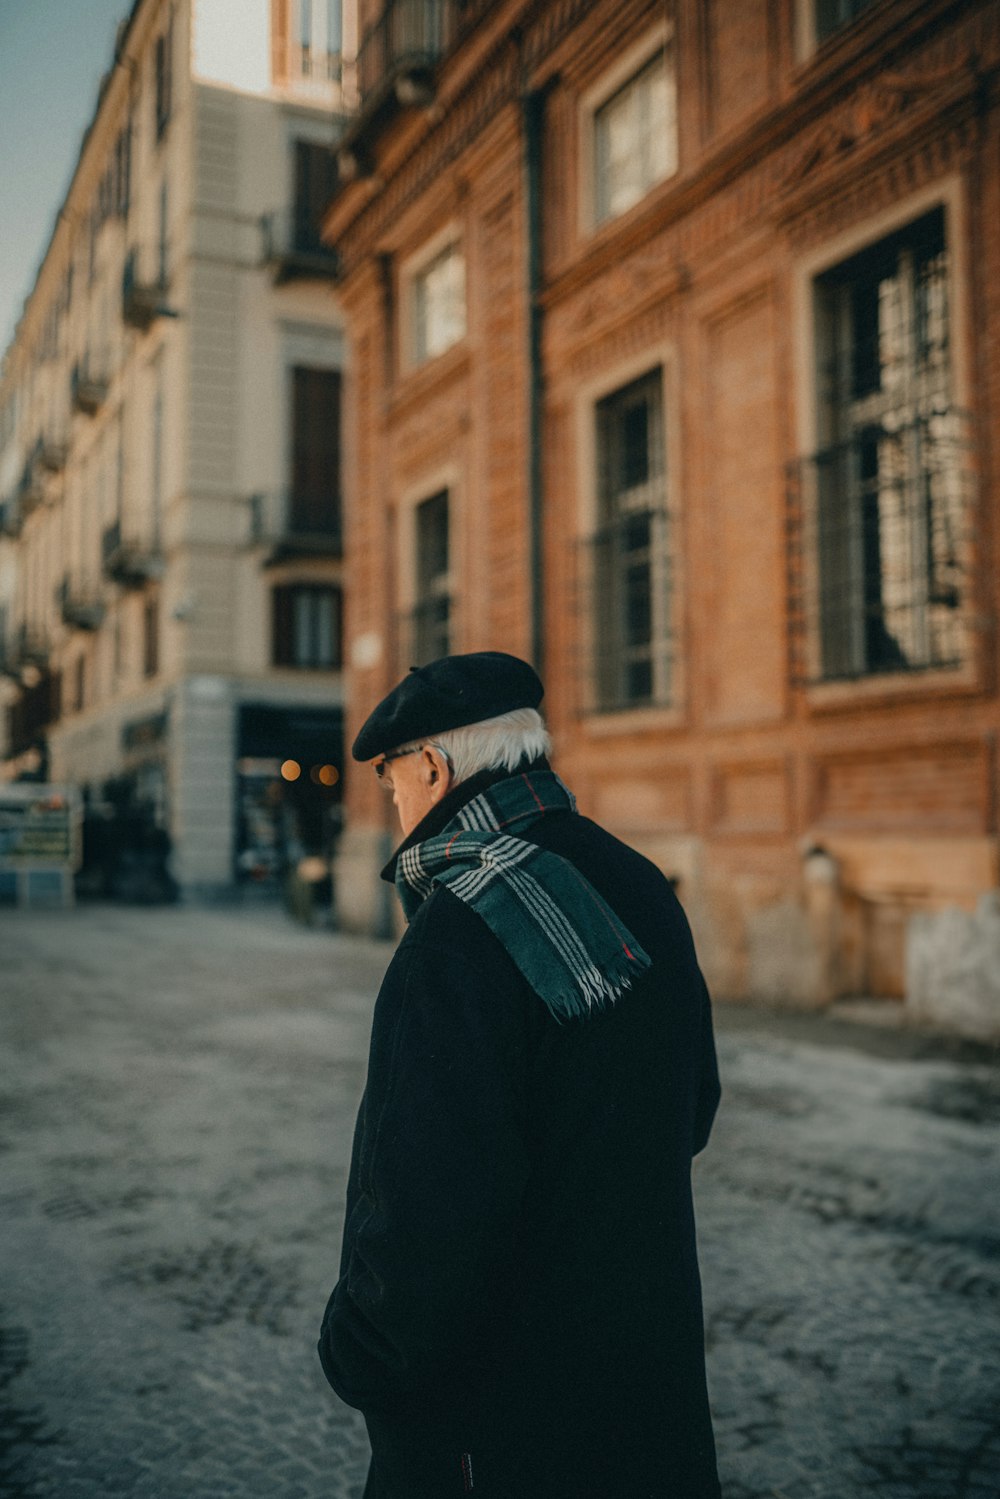 Ein Mann in schwarzem Mantel und Hut geht eine Straße entlang